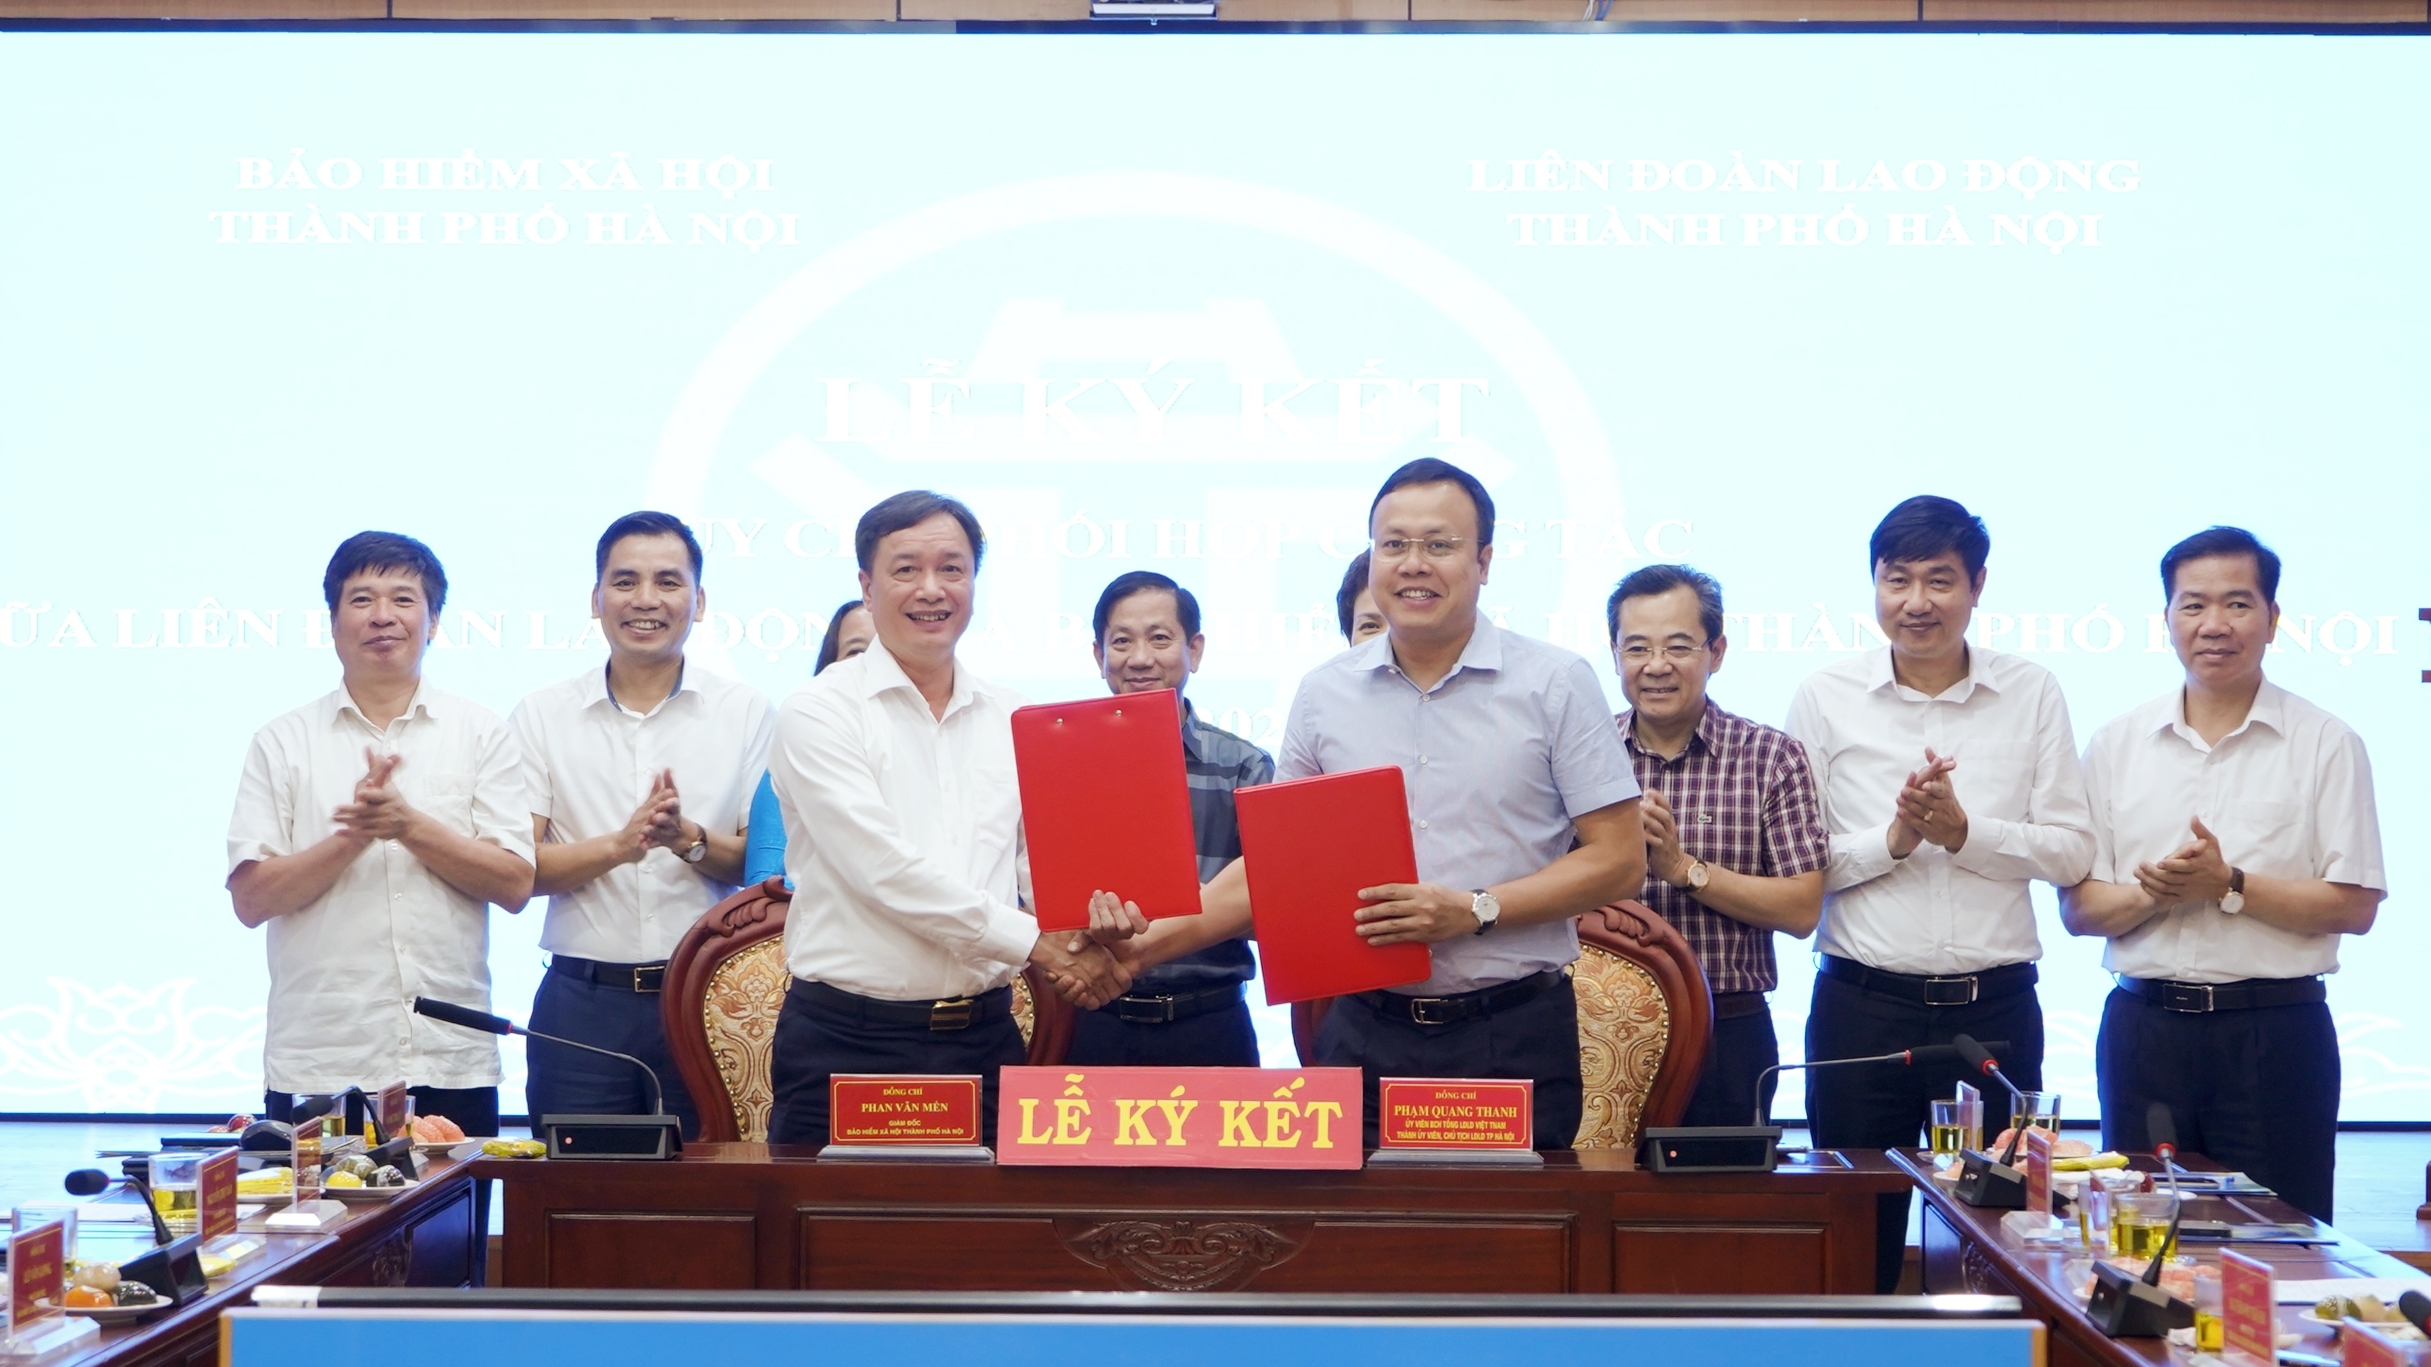 Ký kết Quy chế phối hợp công tác giữa LĐLĐ Thành phố và BHXH thành phố Hà Nội